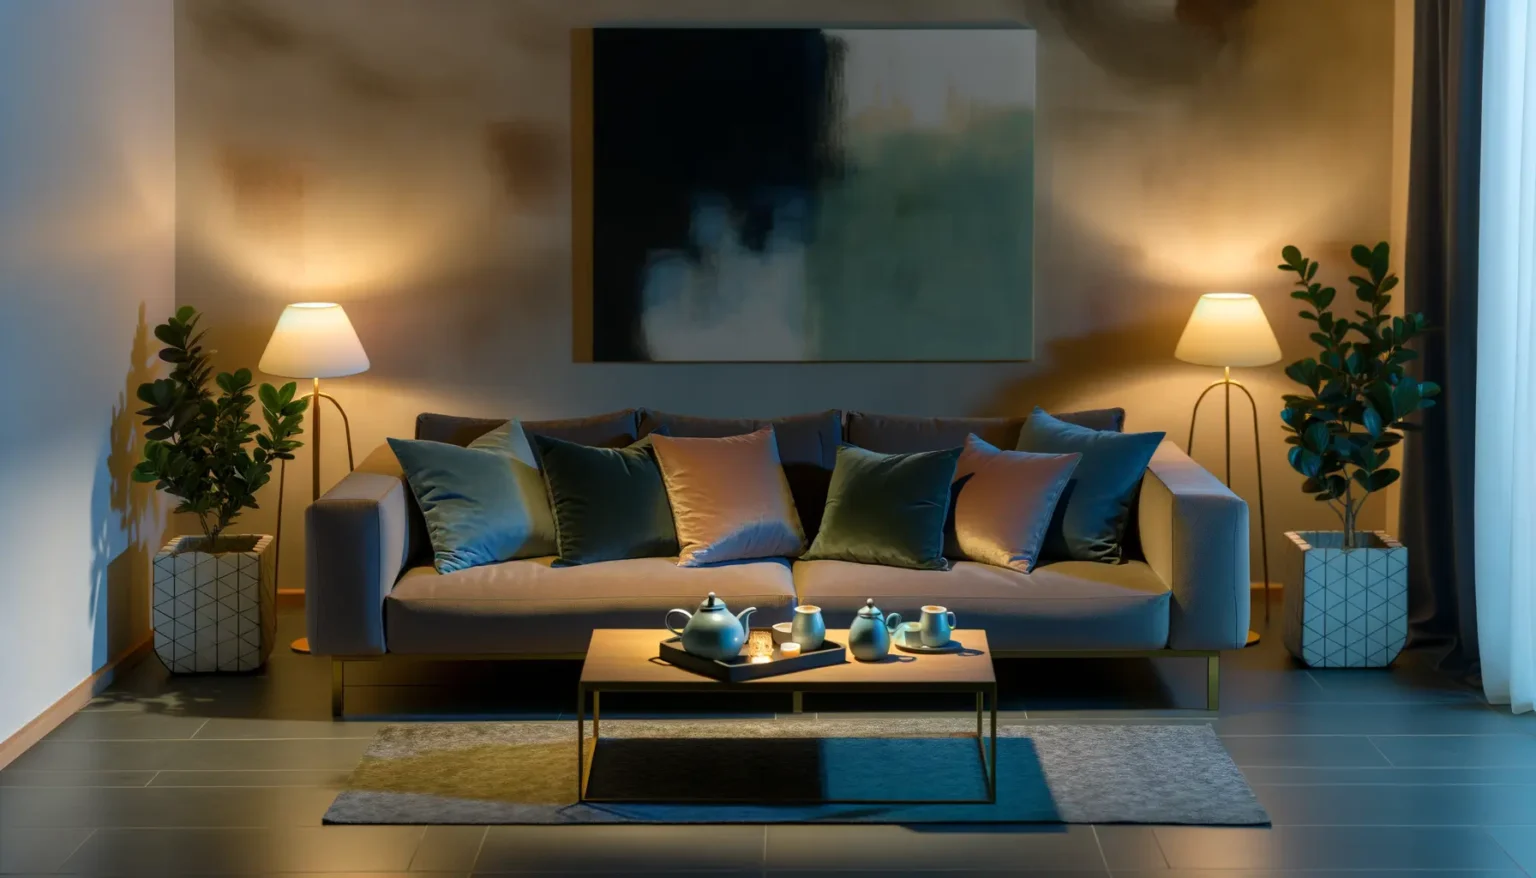 Gemütliches Wohnzimmer in der Abenddämmerung mit einem beigen Sofa voller Kissen in Blau- und Rosatönen, davor ein niedriger Tisch mit einer Teekanne und Tassen. An beiden Seiten des Sofas stehen Pflanzen auf geometrischen Behältern. Über dem Sofa hängt ein abstraktes Gemälde mit dunklen und hellblauen Farben, und die Szene wird durch warmes Licht von Stehlampen akzentuiert.